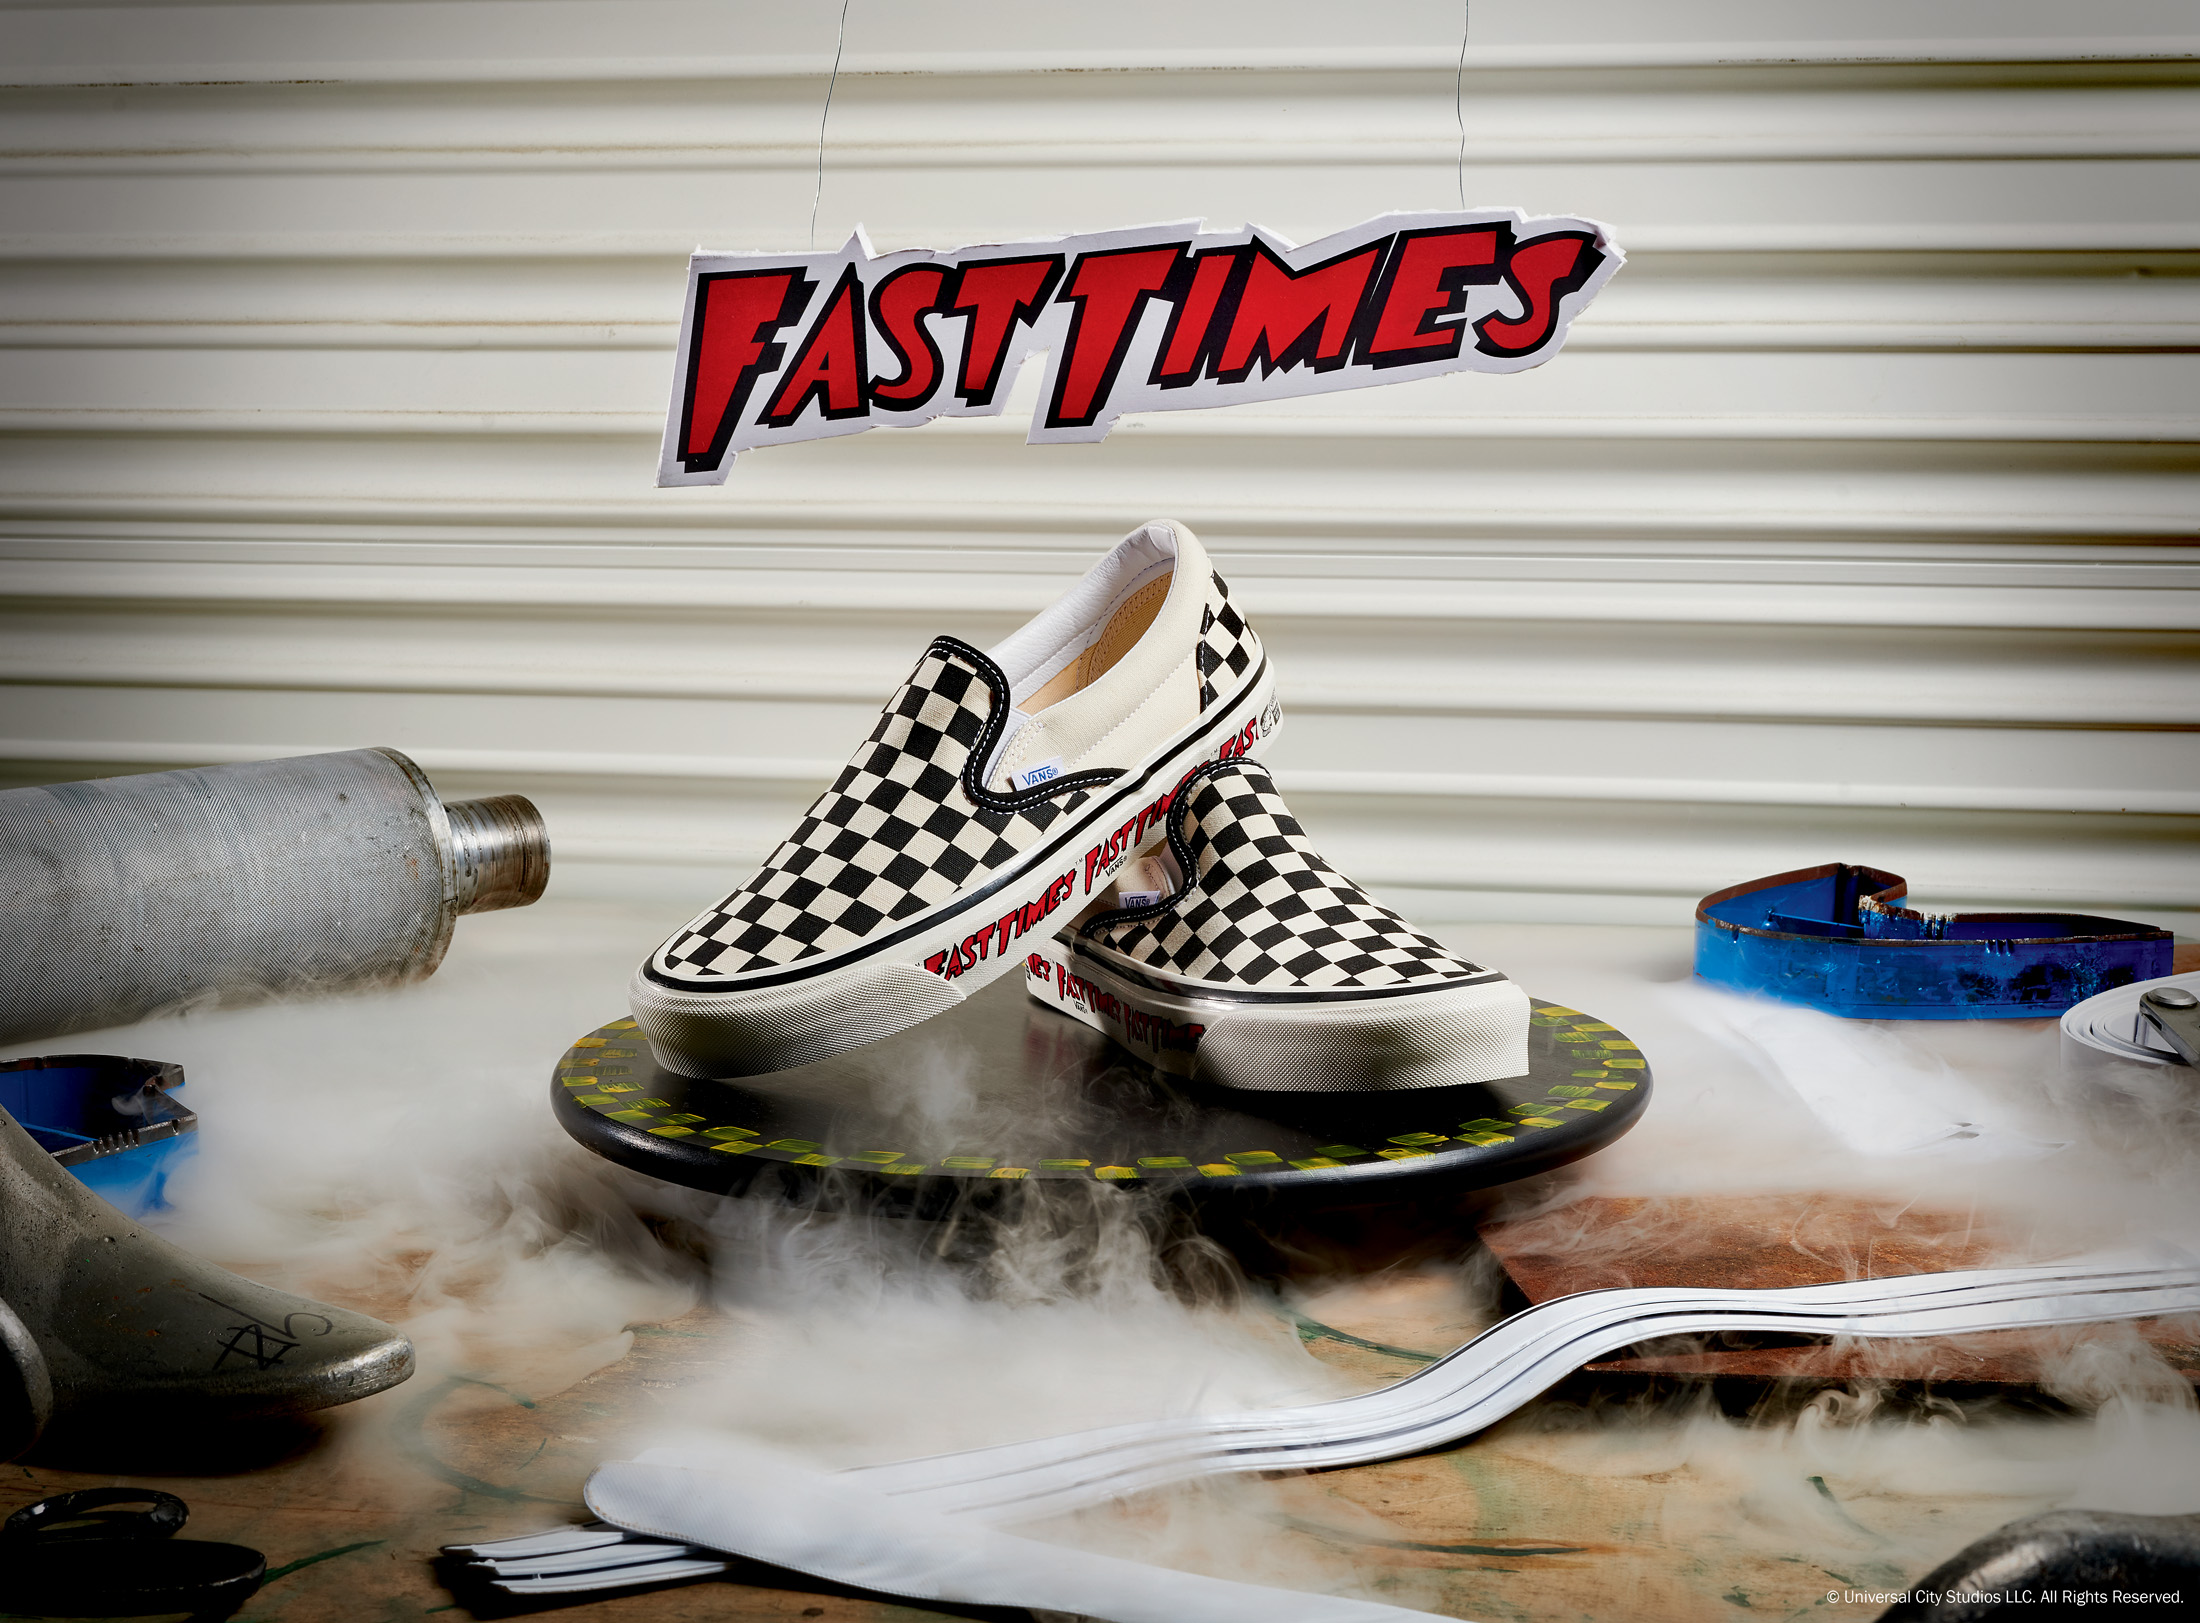 Vans reeditó sus zapatillas inspiradas en la película de culto “Fast Times”